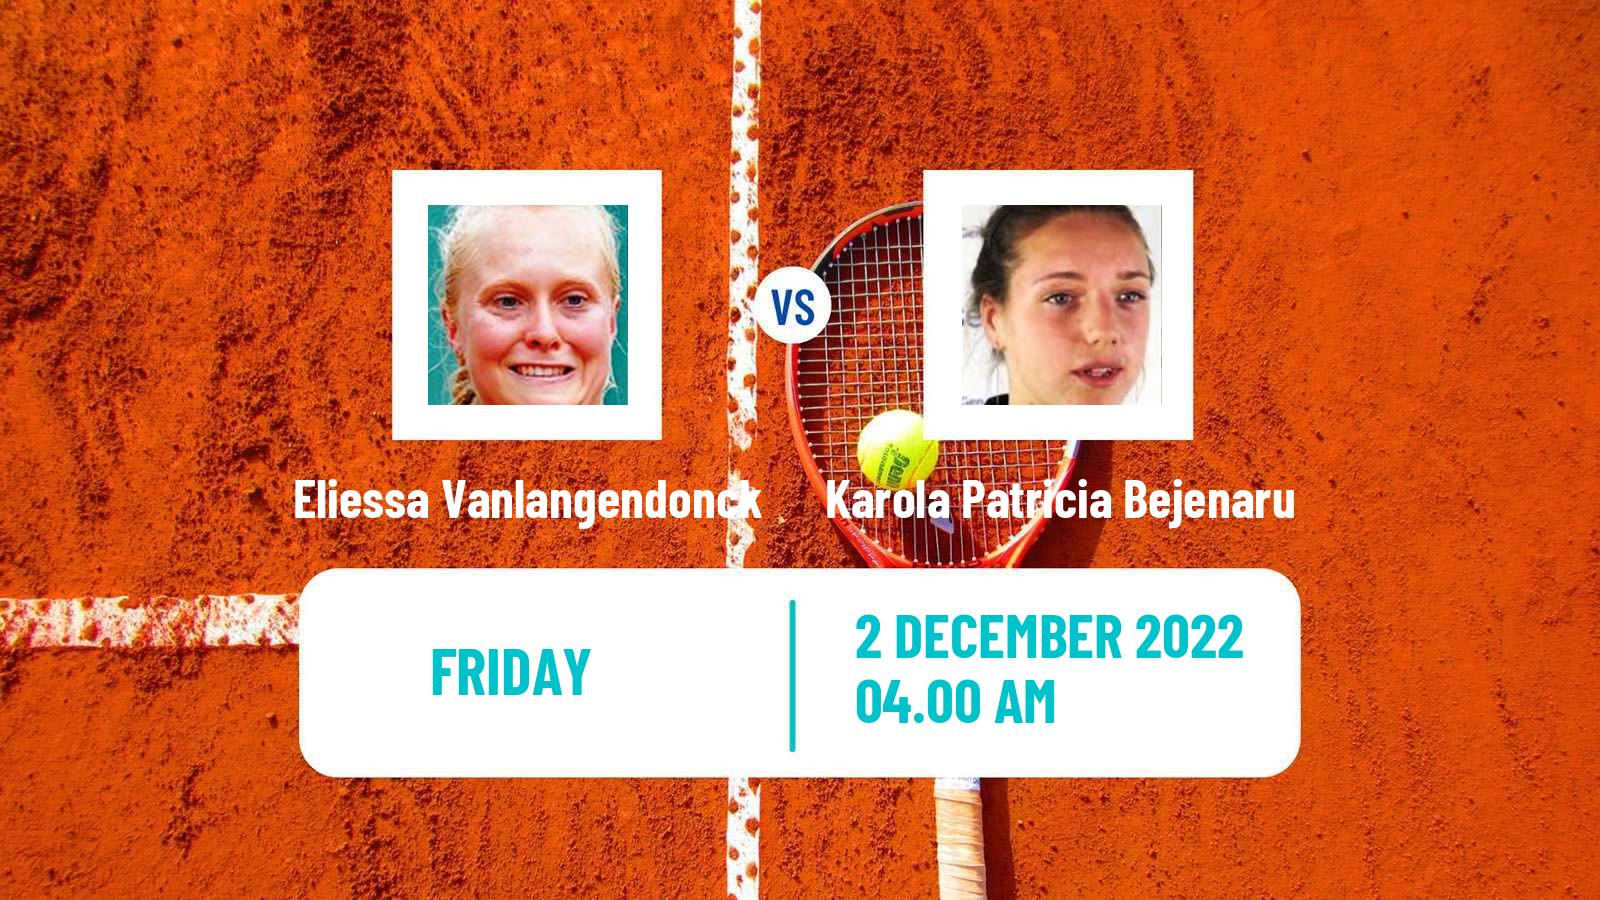 Tennis ITF Tournaments Eliessa Vanlangendonck - Karola Patricia Bejenaru